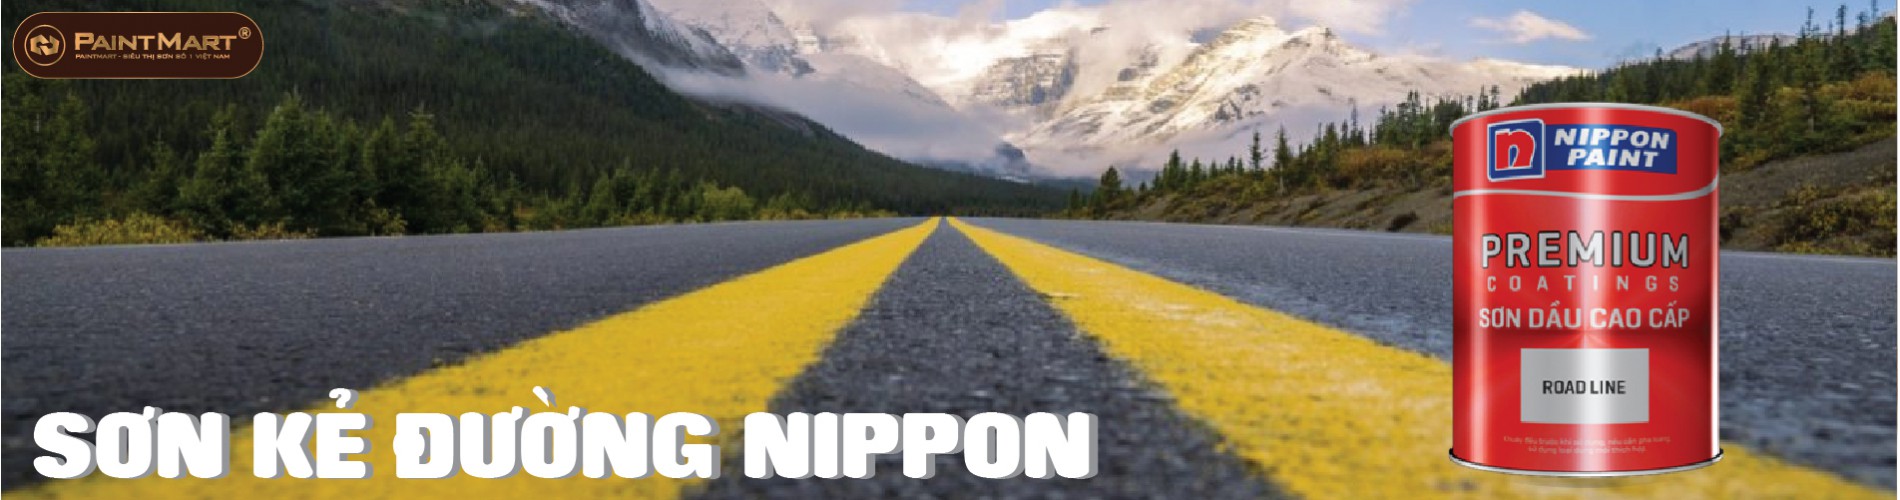 Sơn kẻ đường Nippon